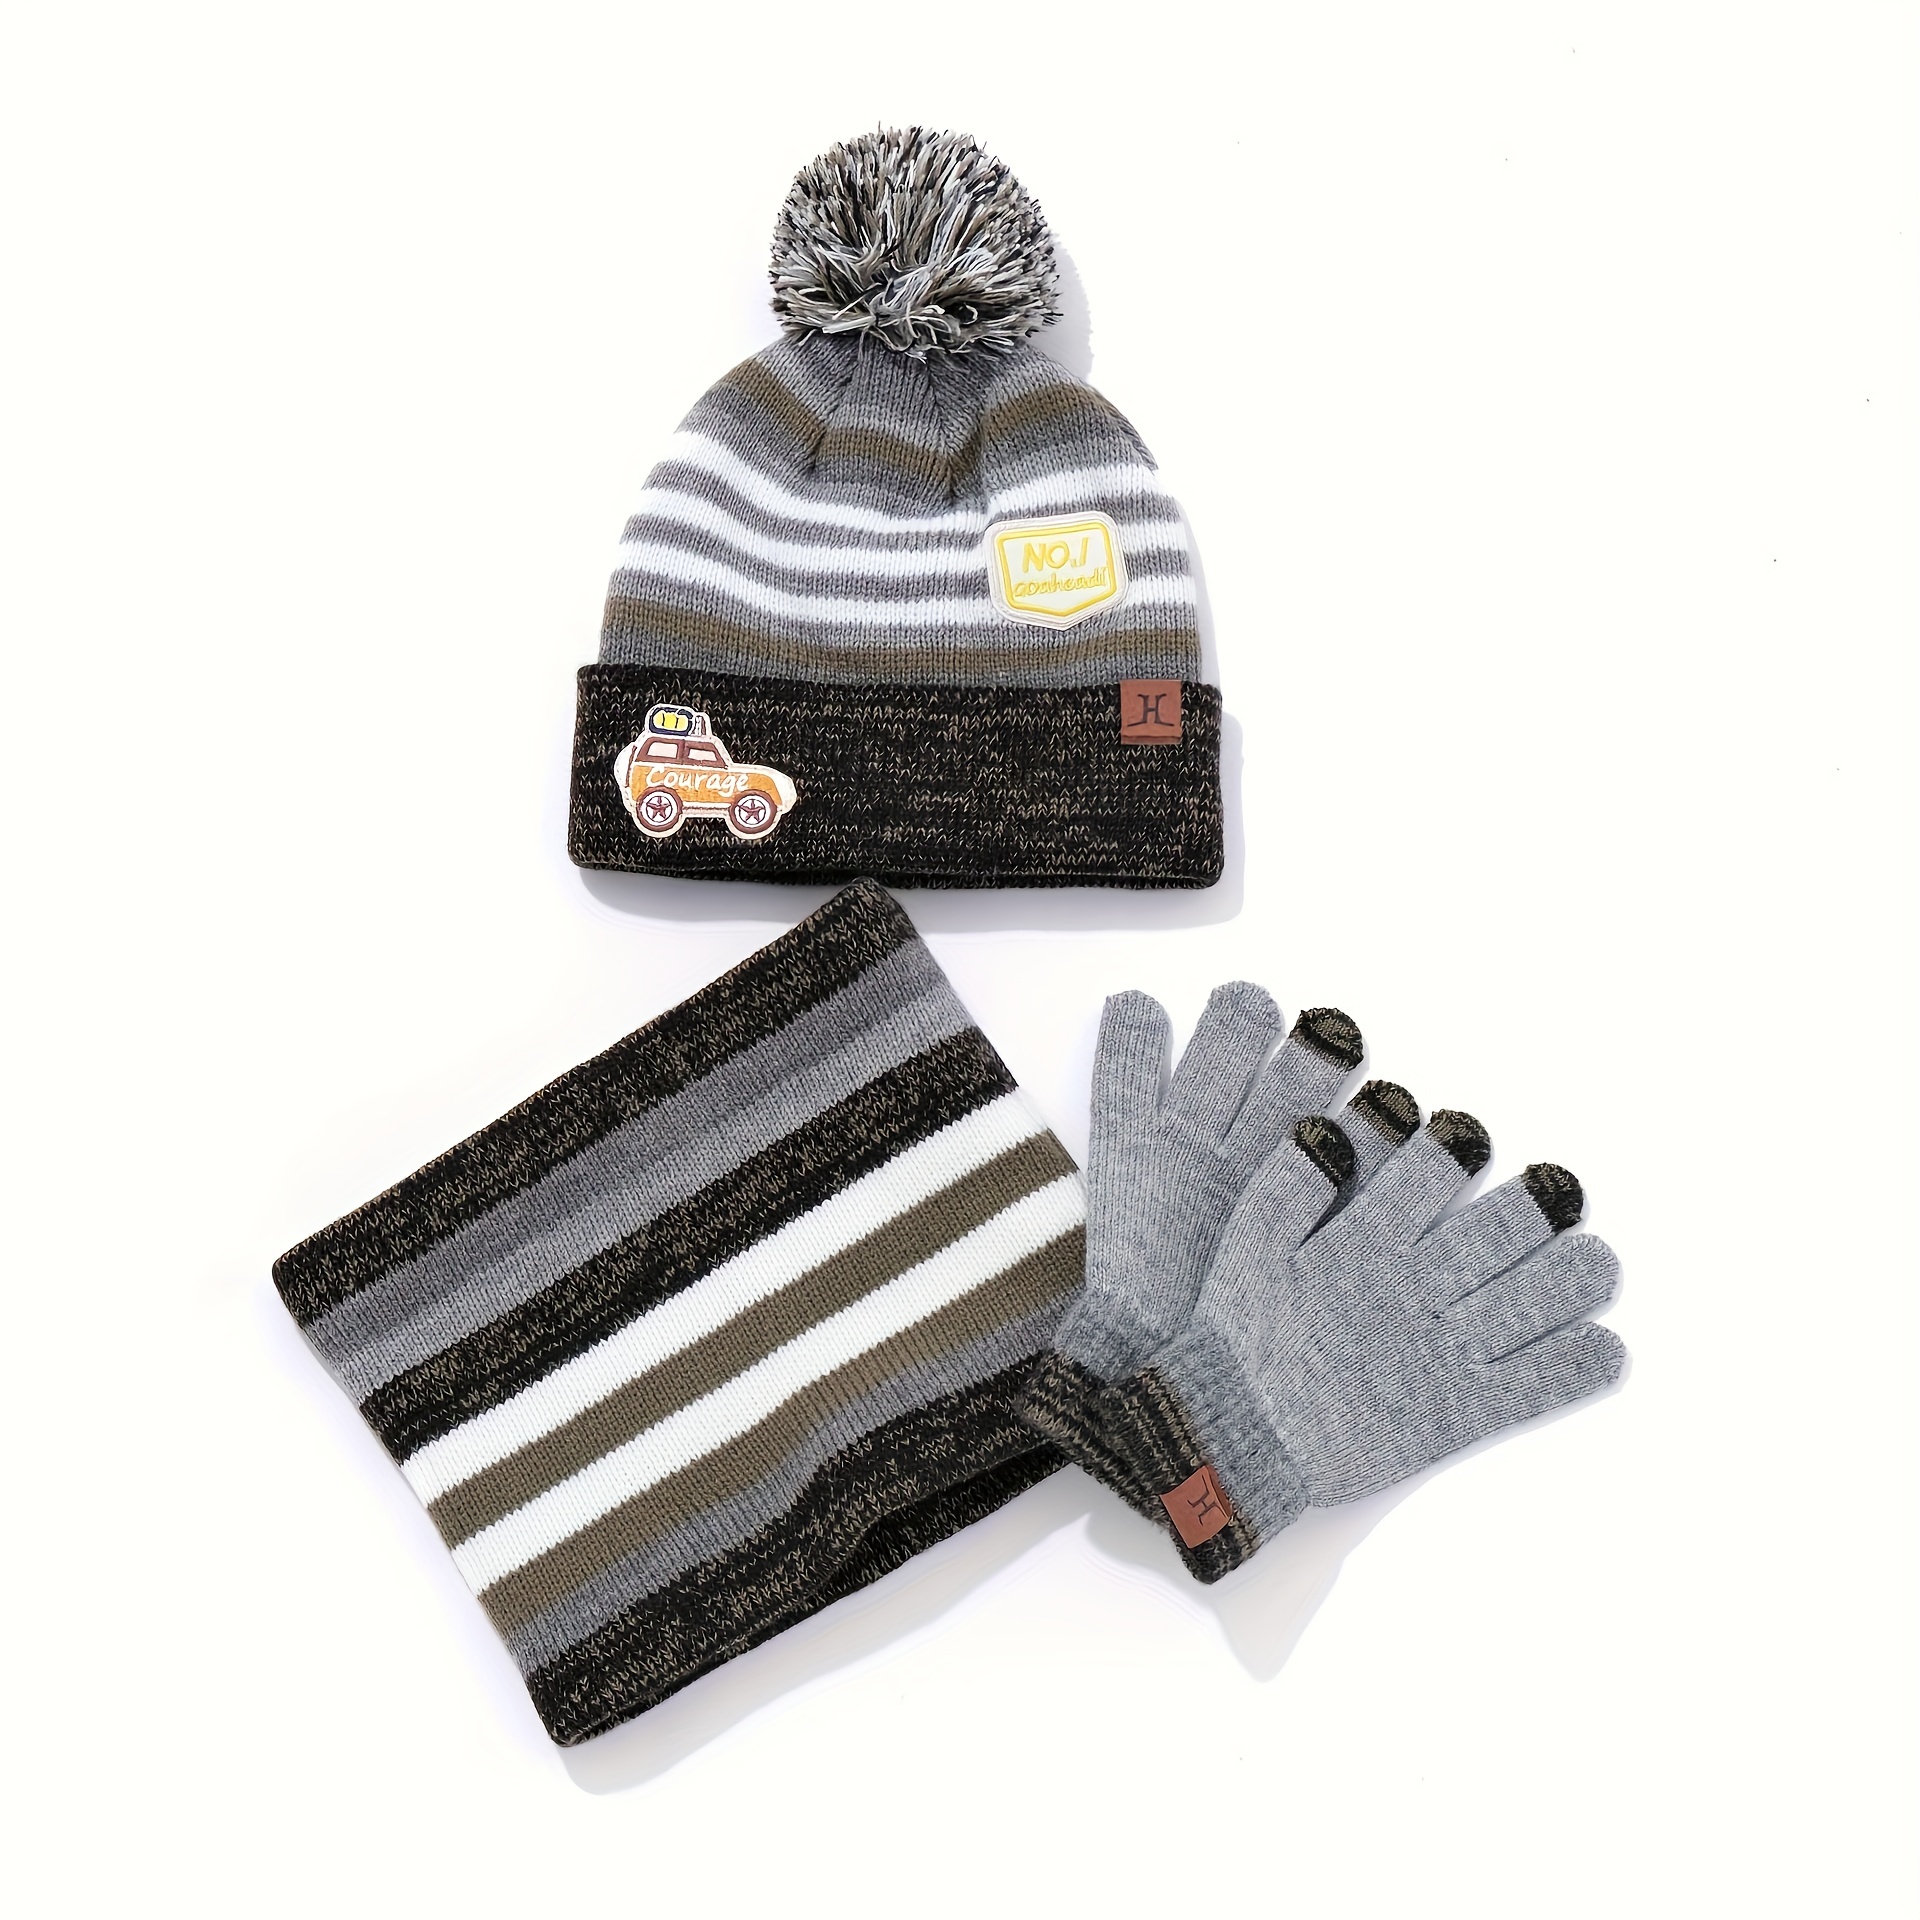 Echarpe, gants & bonnet enfant fille 4 ans - Snood, moufles